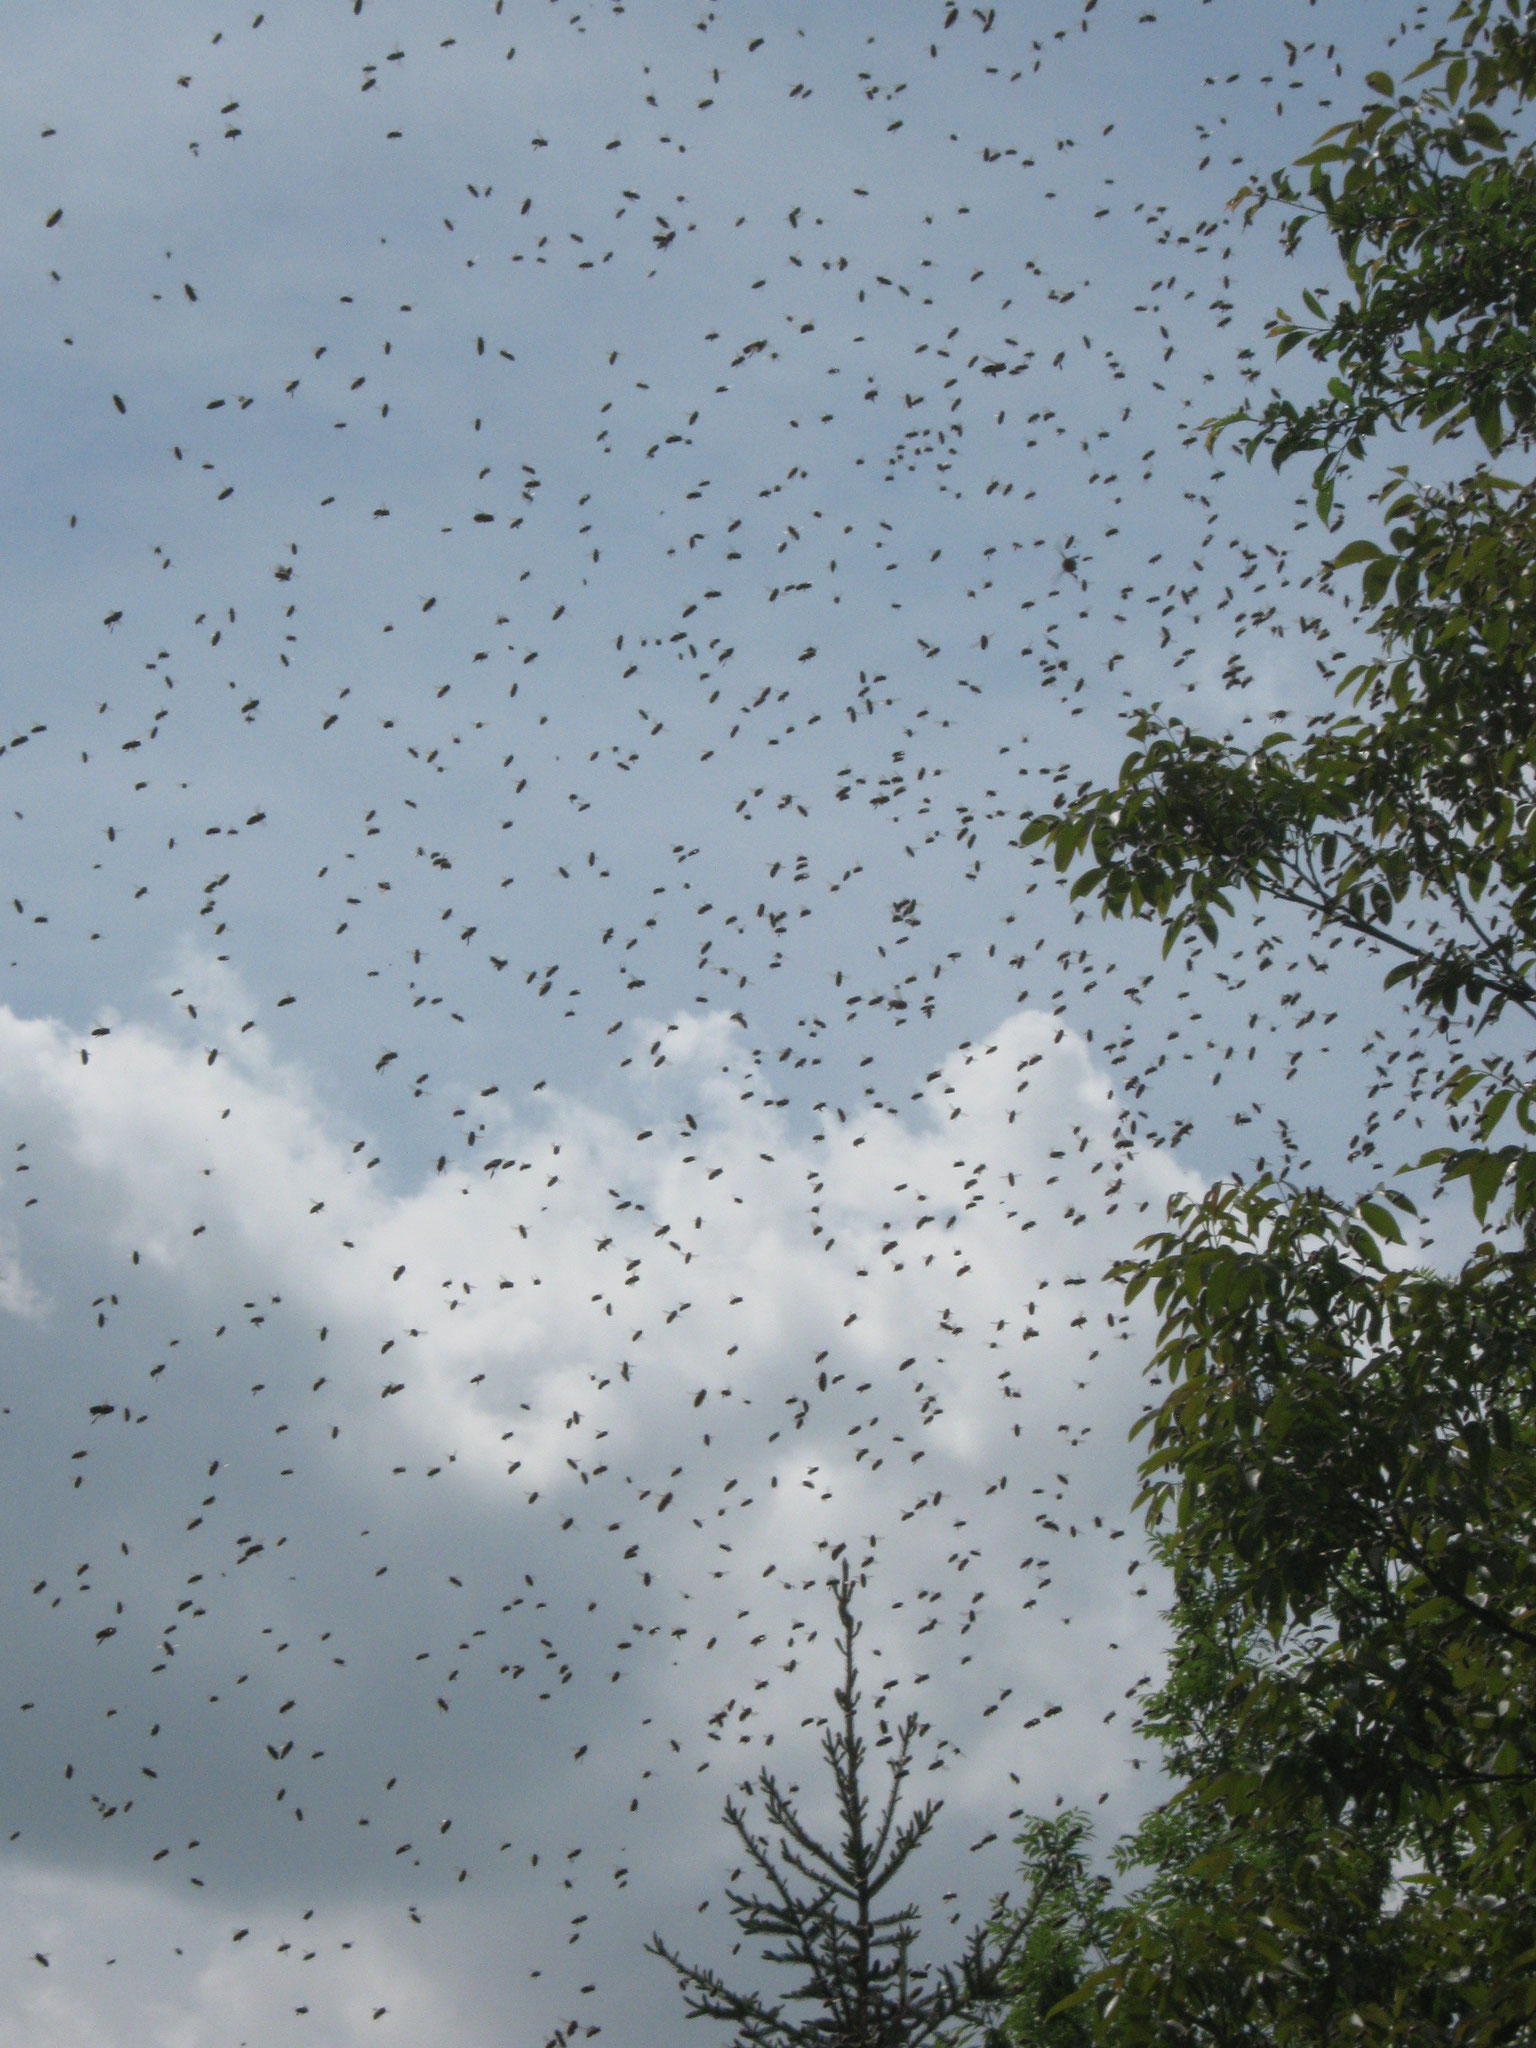 Der Himmel ist voller Bienen bevor sich ein Schwarm zu einer Traube vereinigt